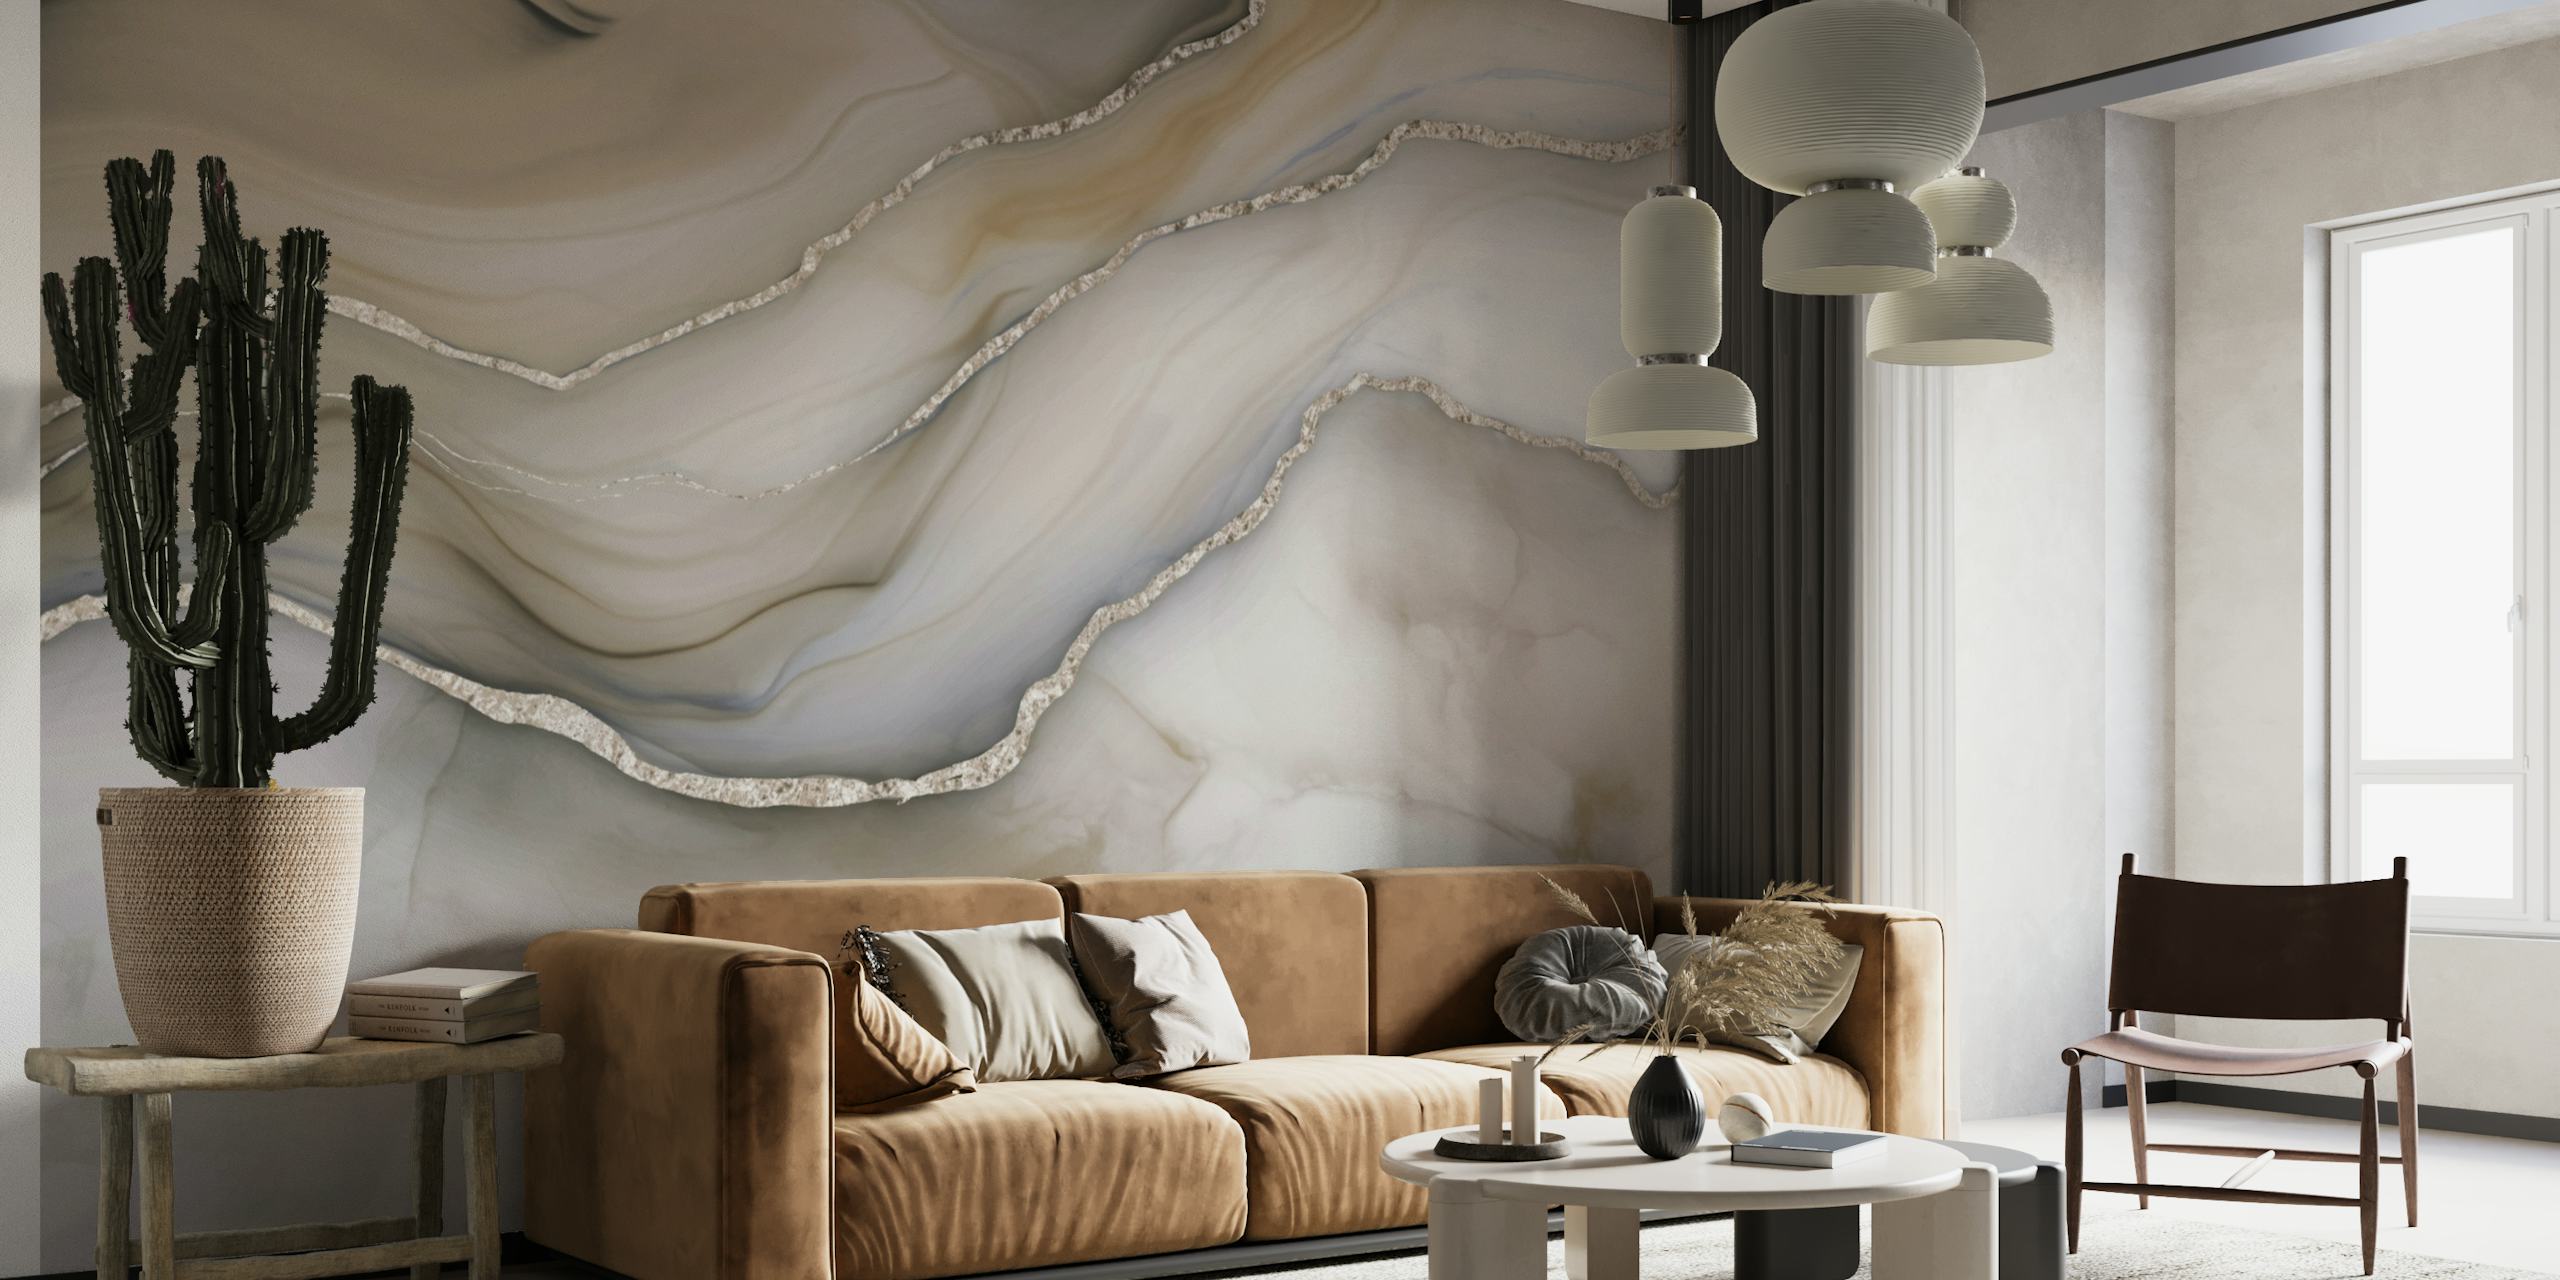 Luxe muurschildering in ivoor, bruin en beige marmerpatroon voor interieurontwerp